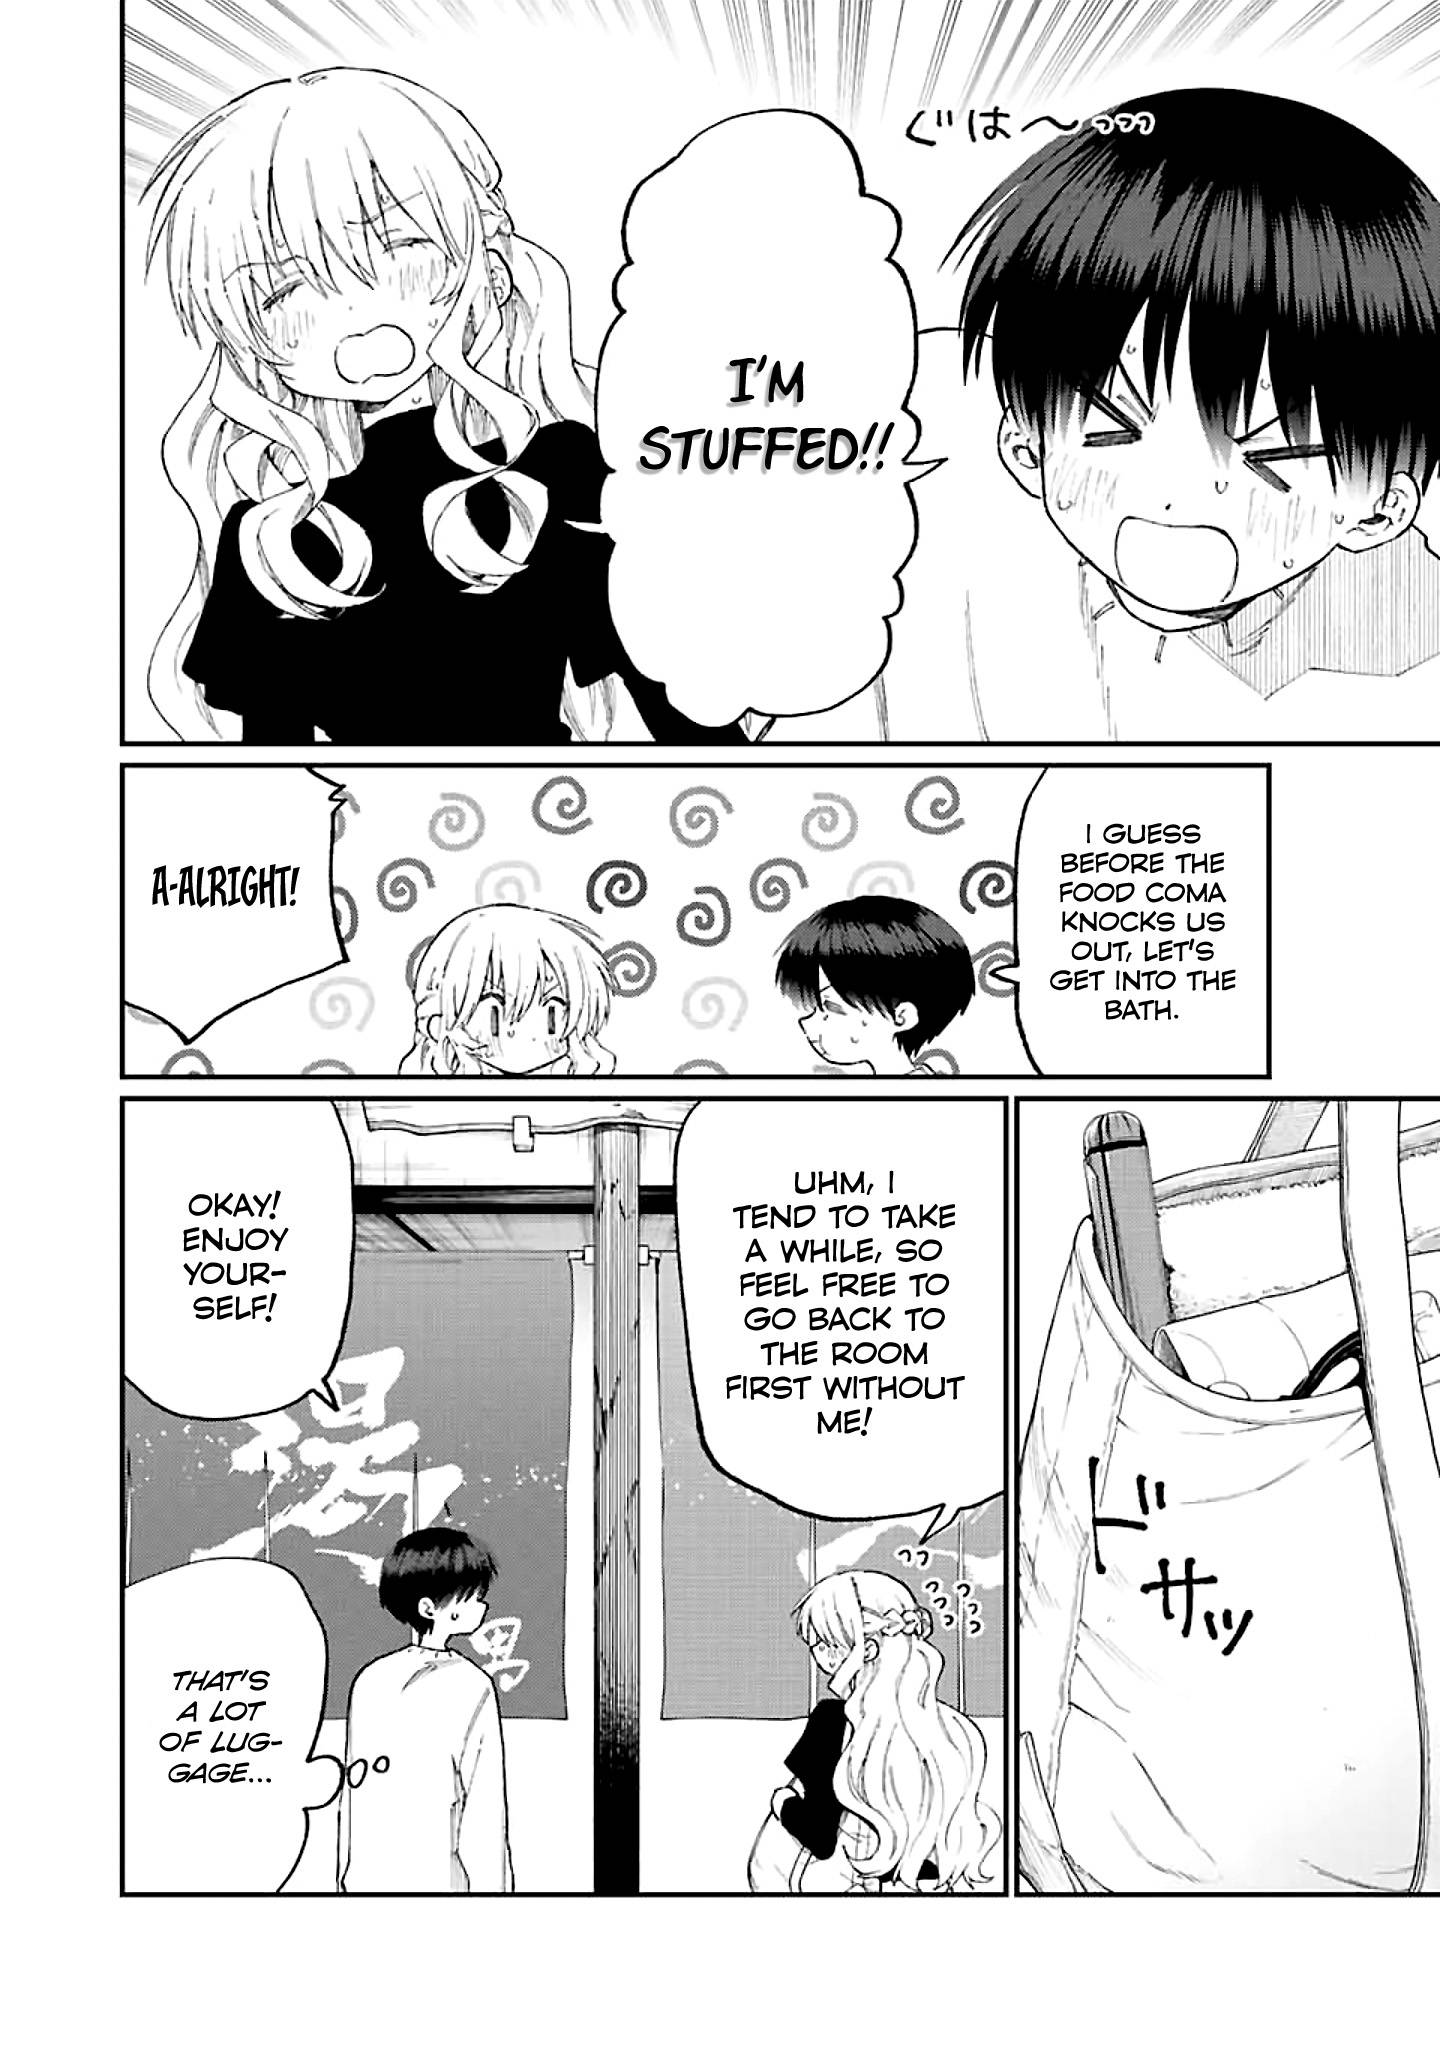 Shikimori's Not Just A Cutie - chapter 175 - #6